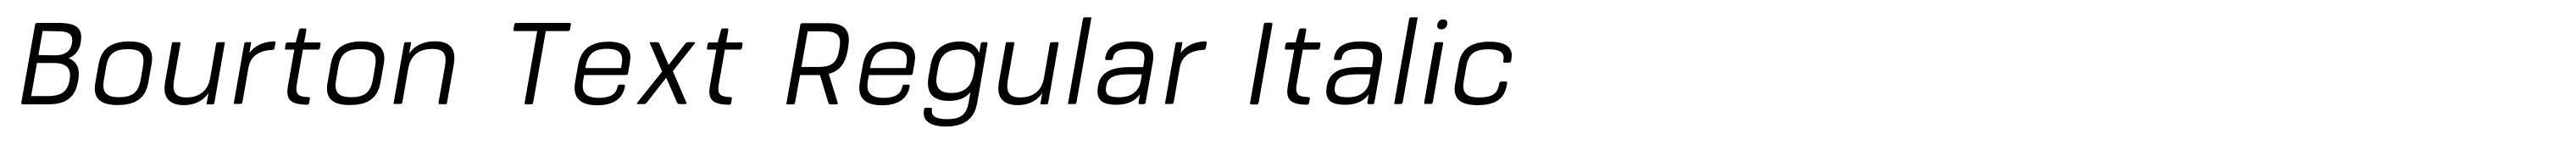 Bourton Text Regular Italic